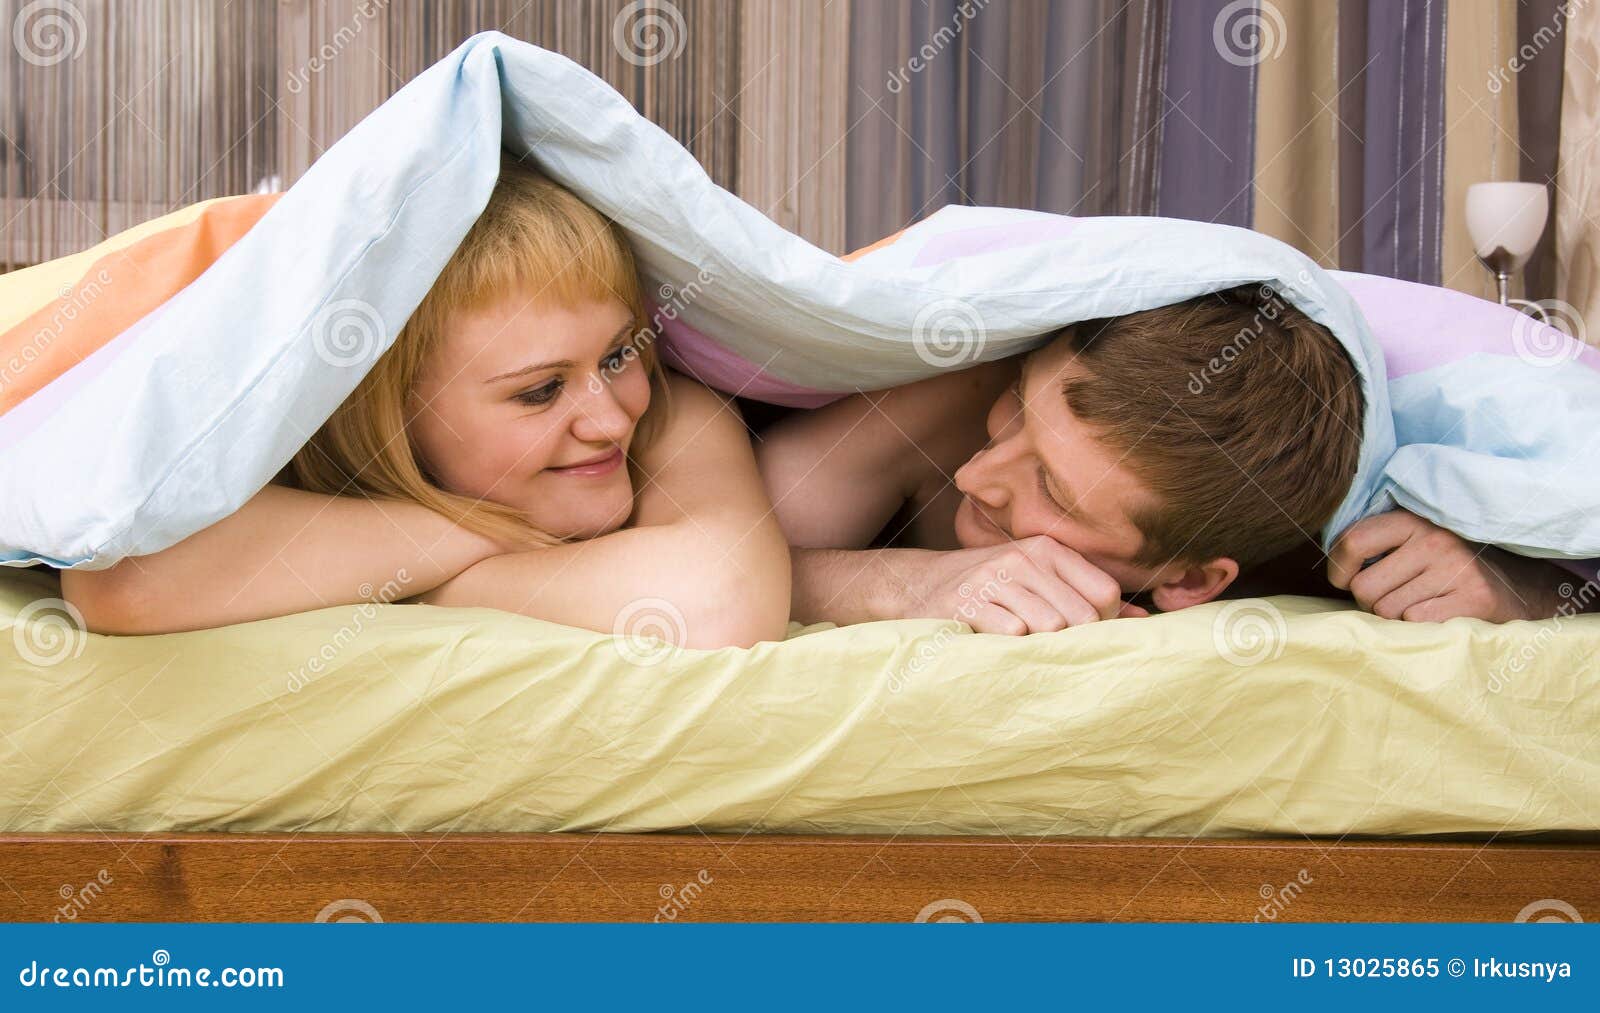 Фото под одеялом жены